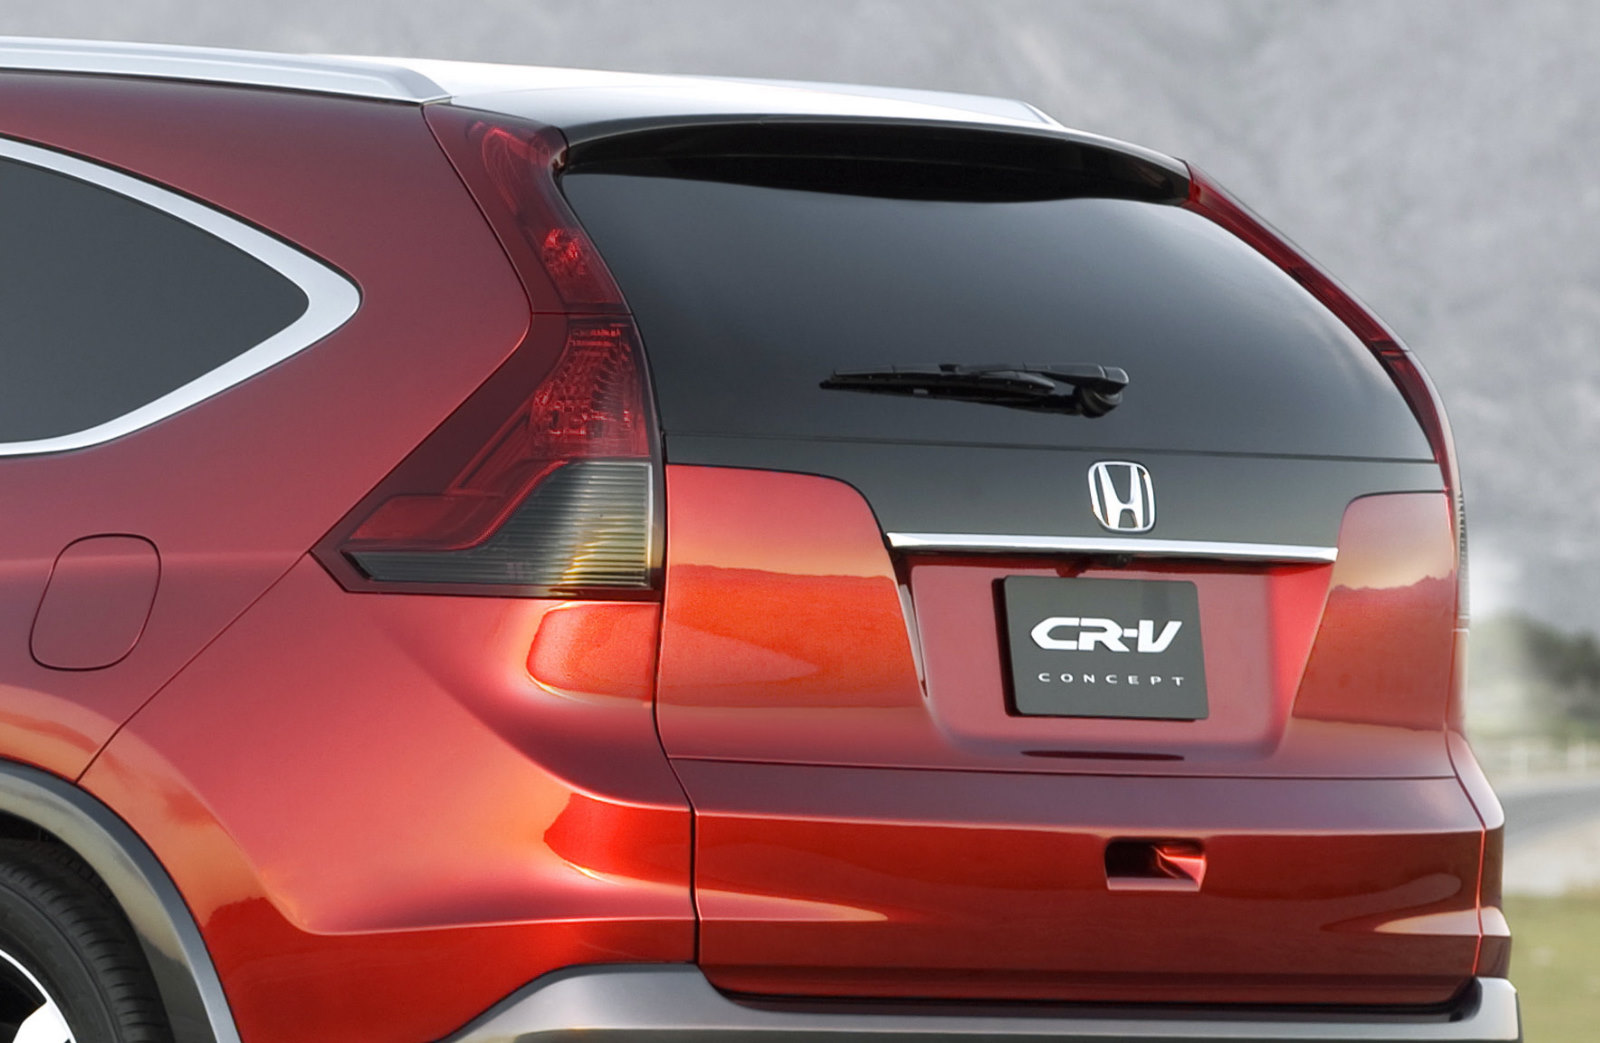 Honda CR-V 2012 concept, cuarta generación